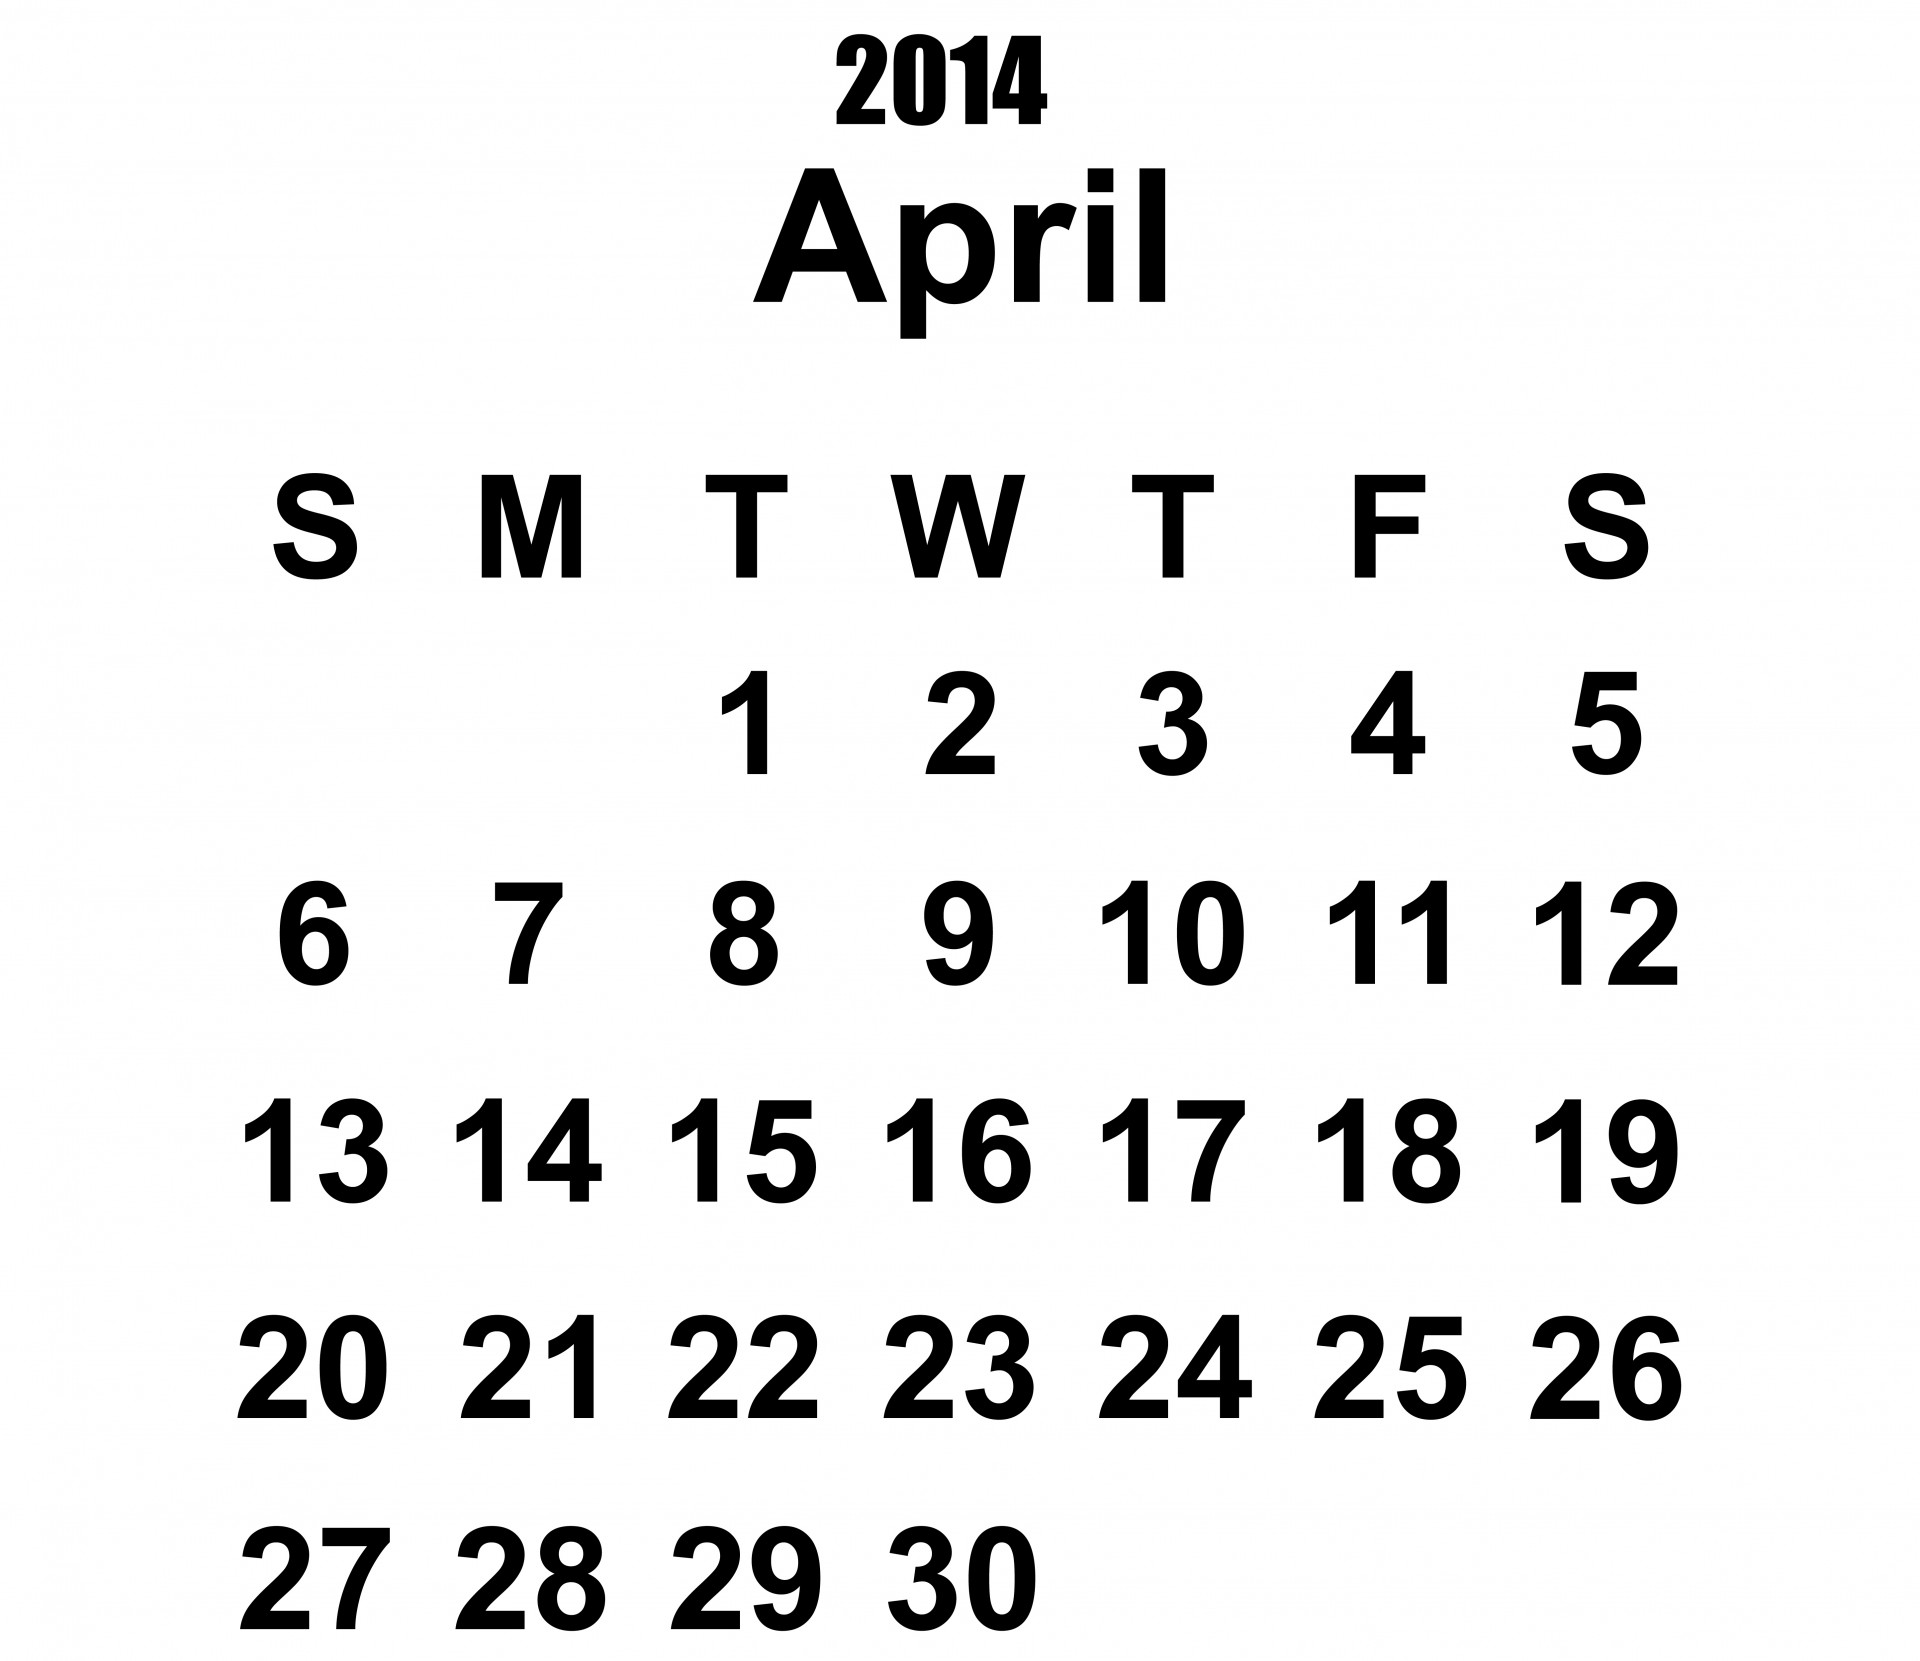 2104-calendar-april-2014-calendar-2104-april-calendar-free-image-from-needpix